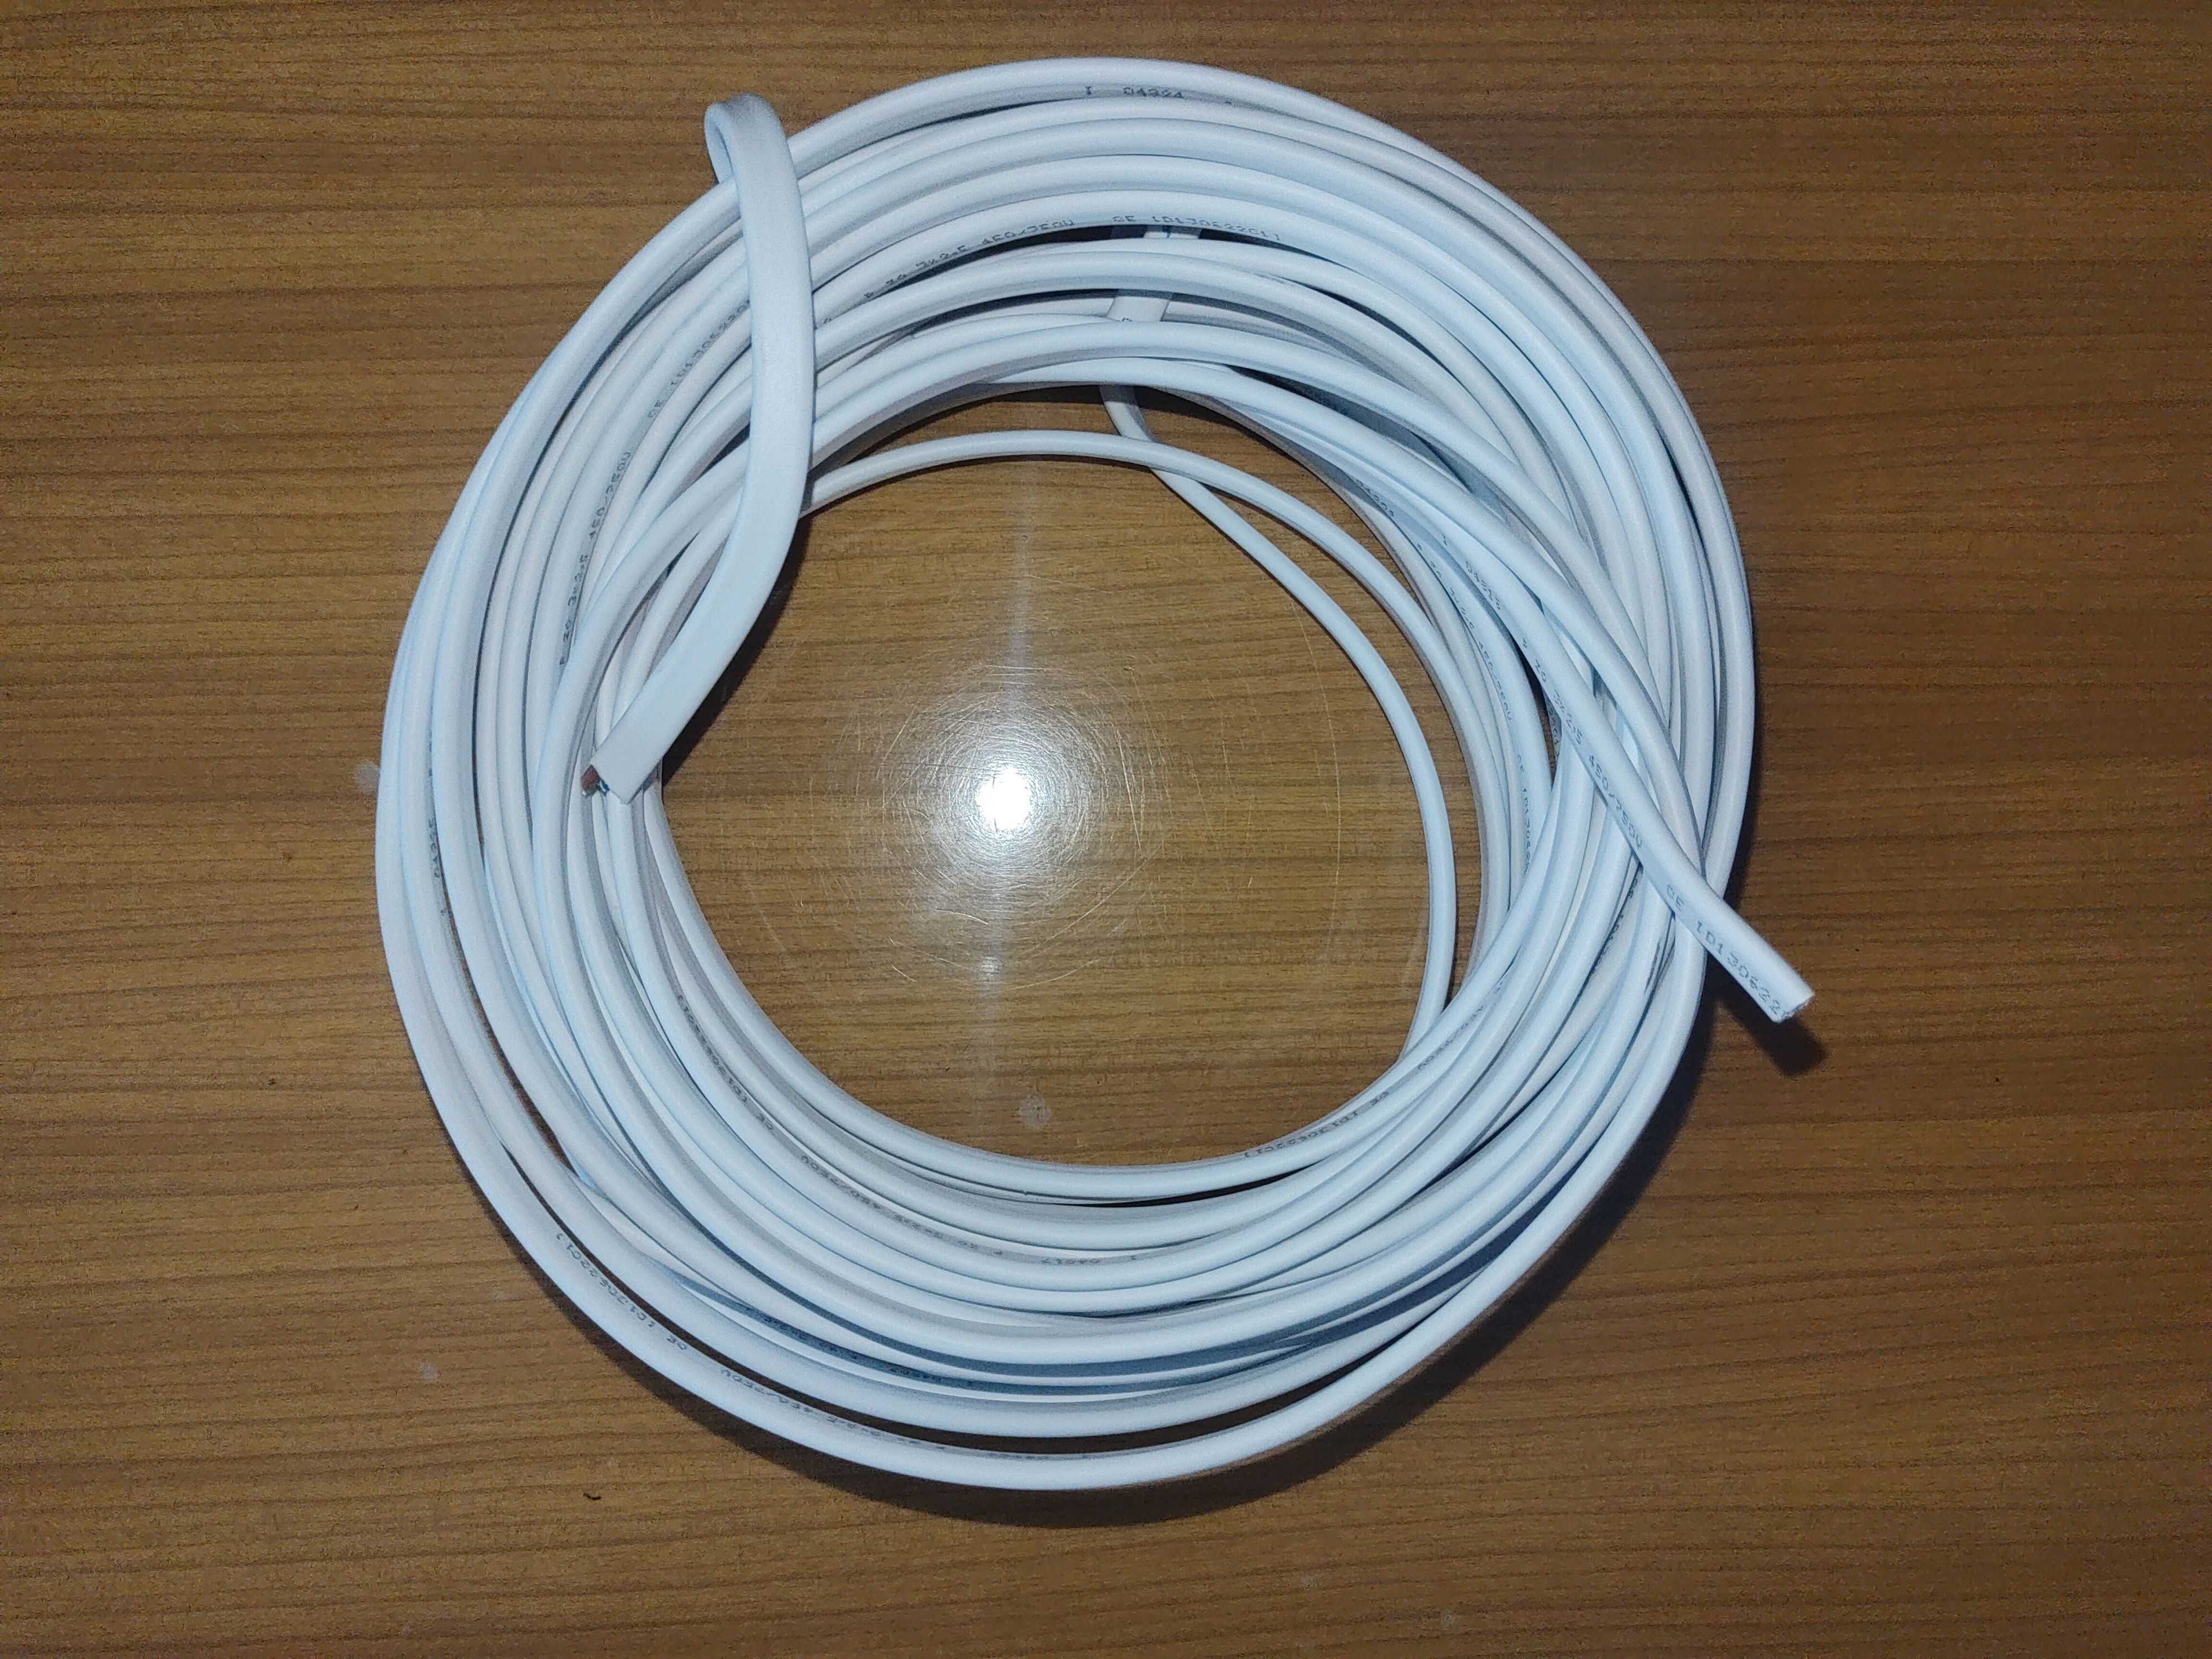 Przewód ydyp 3x1,5 żo 450/750v kabel 17 metrów